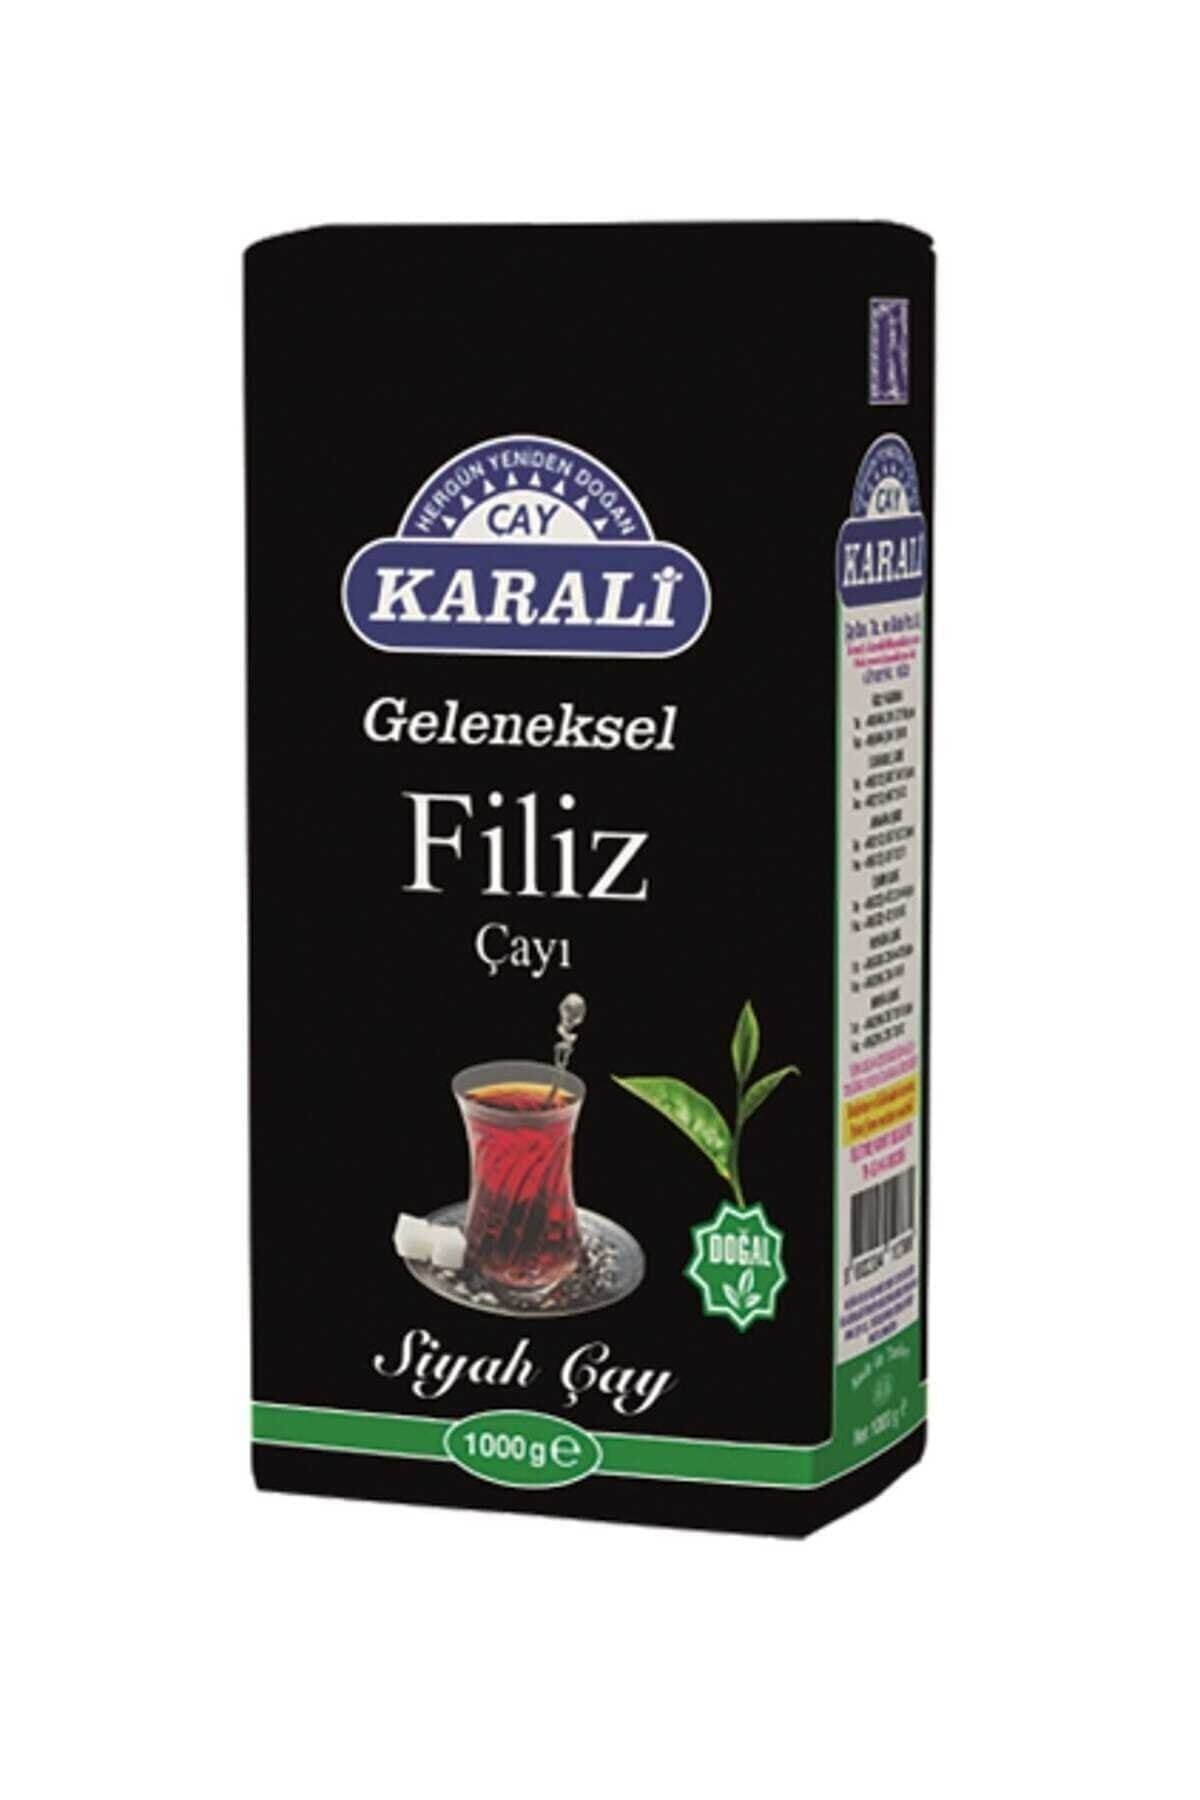 Karali Çay Karali Geleneksel Filiz Çayı 1 Kg.